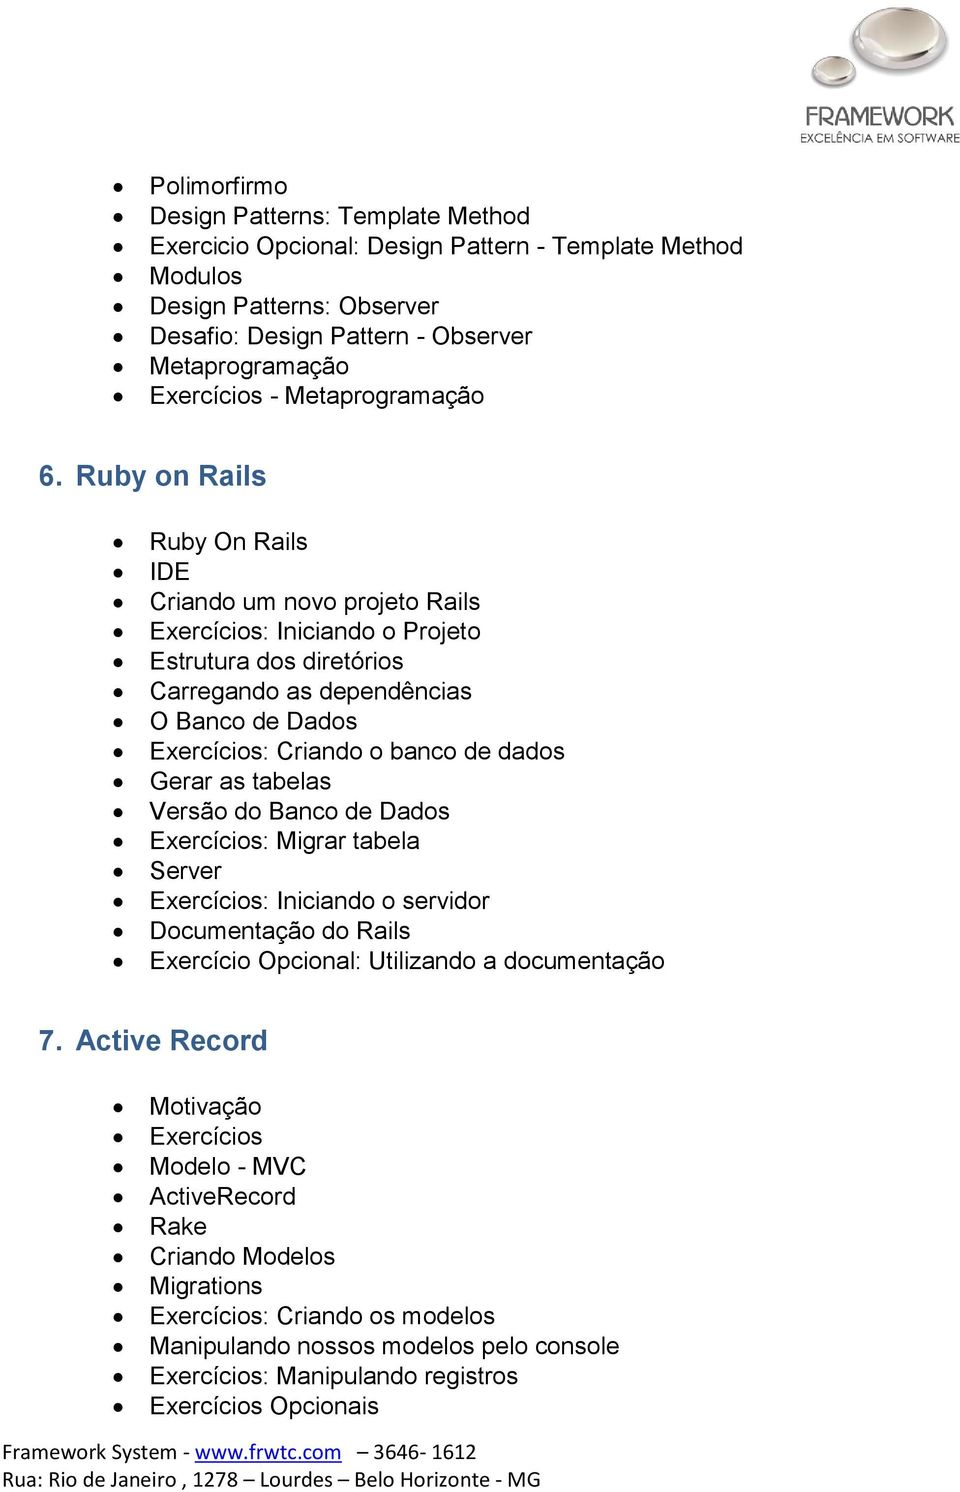 Ruby on Rails Ruby On Rails IDE Criando um novo projeto Rails : Iniciando o Projeto Estrutura dos diretórios Carregando as dependências O Banco de Dados : Criando o banco de dados